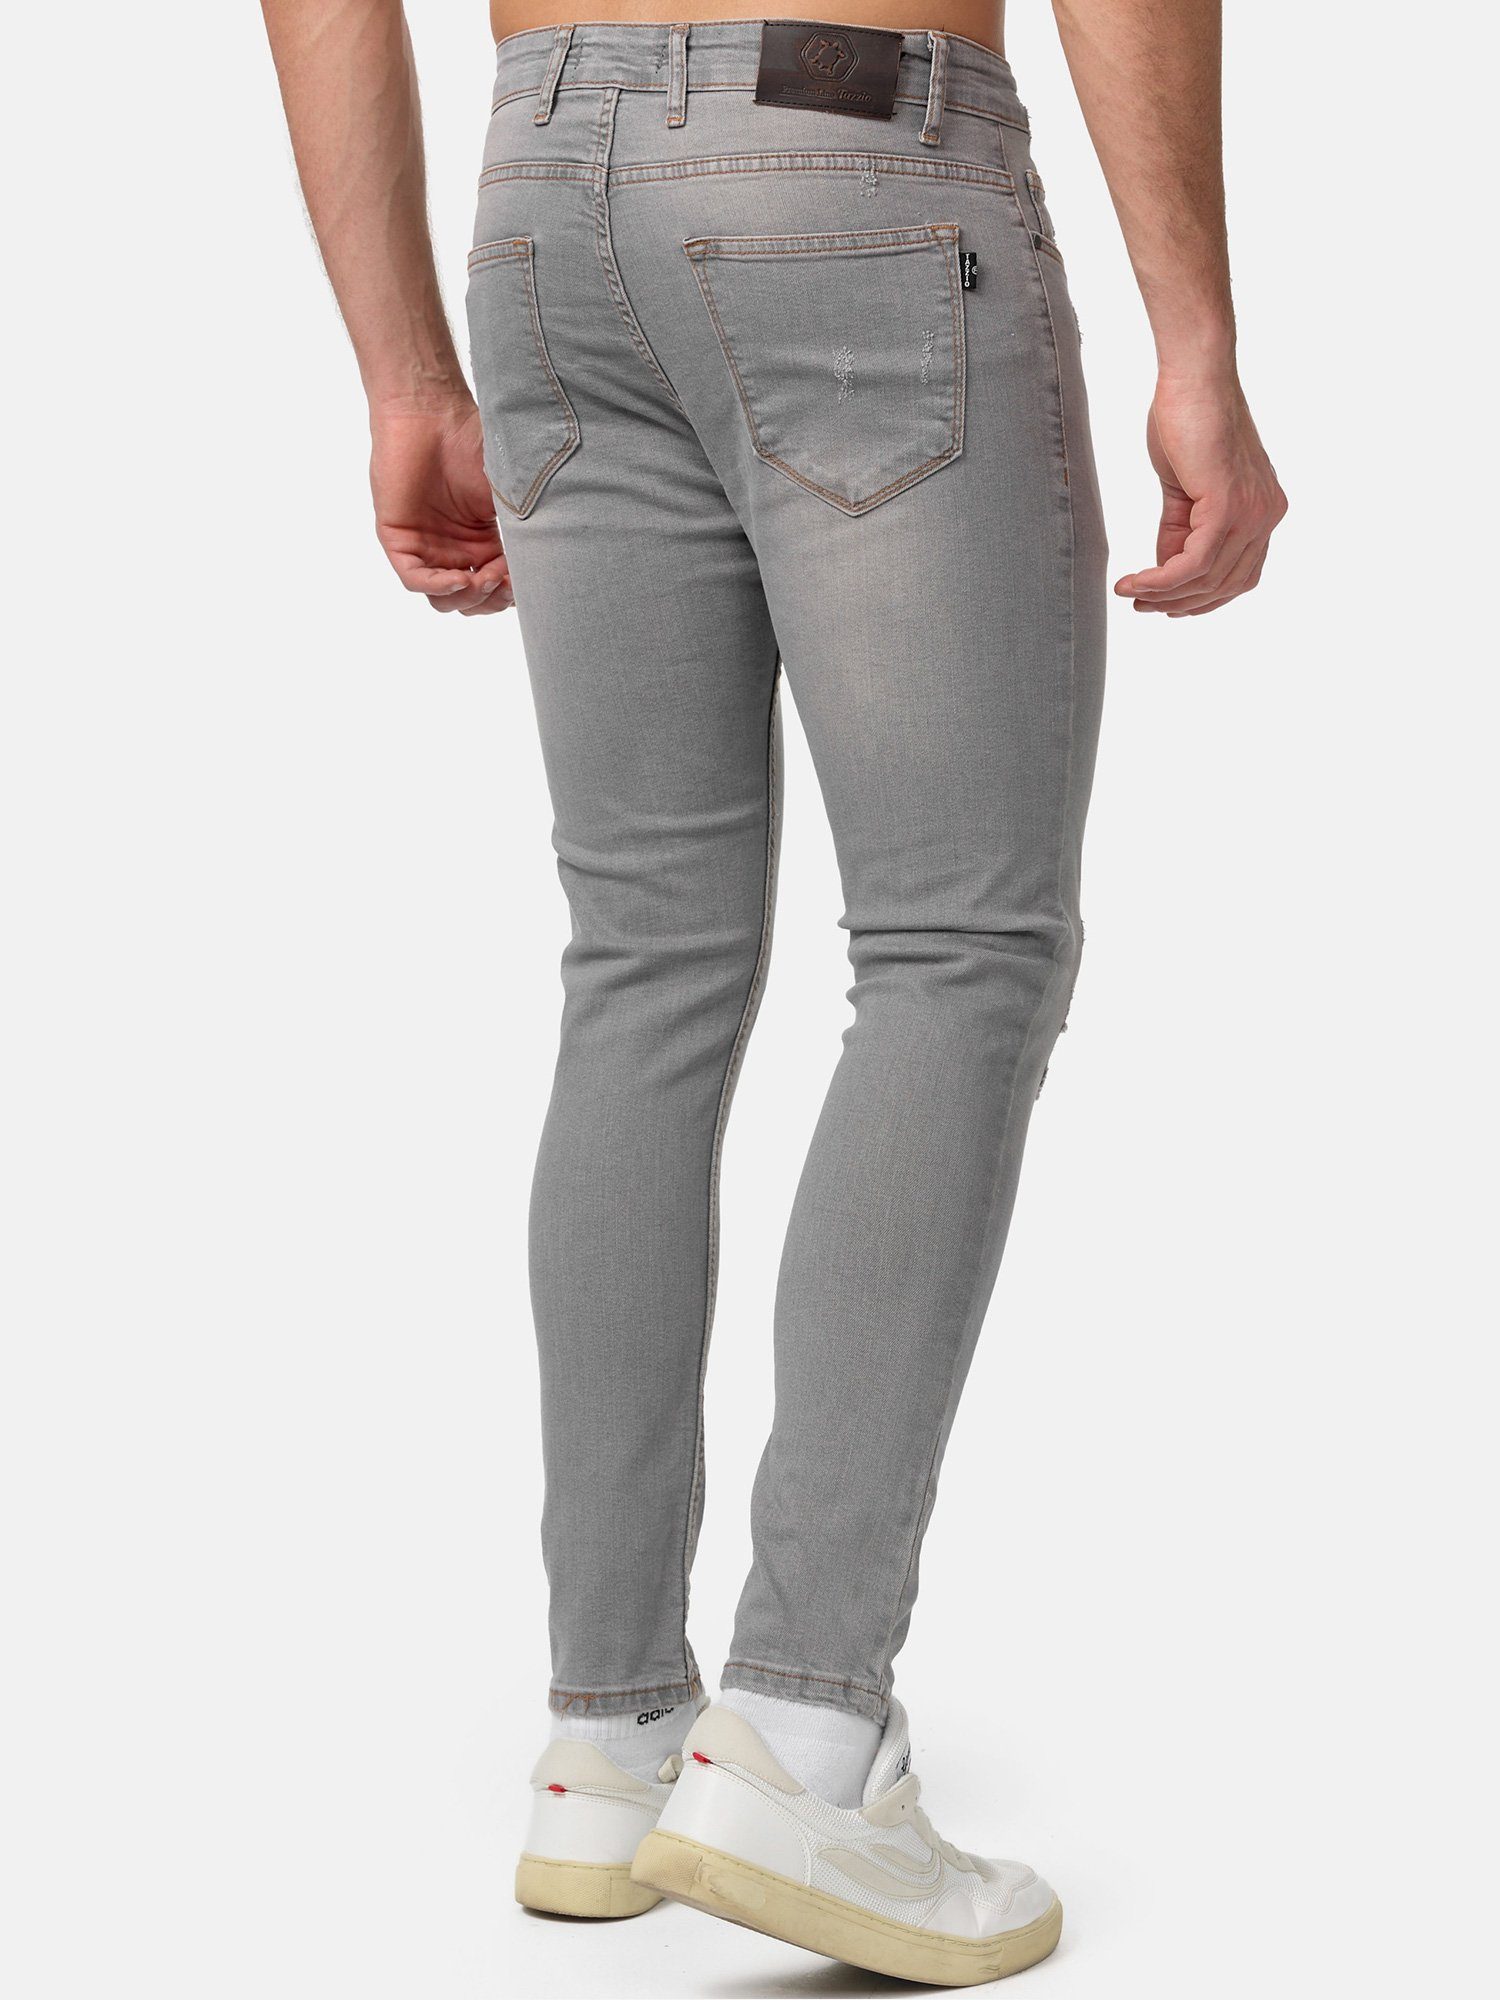 Destroyed-Look im grau Tazzio Skinny-fit-Jeans 17514